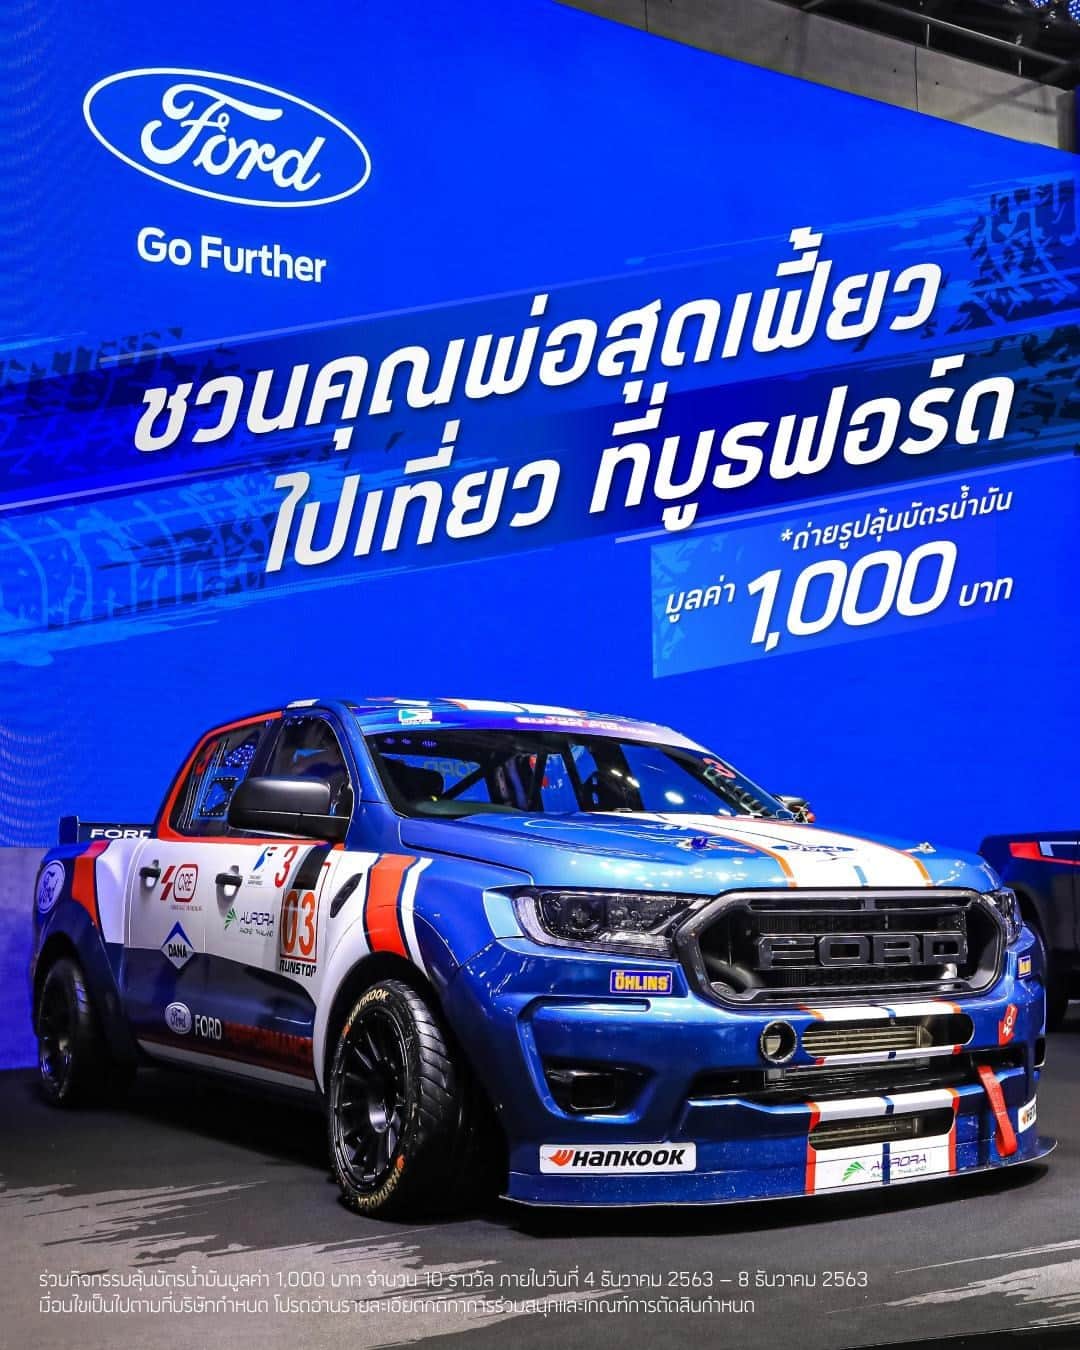 Ford Thailandさんのインスタグラム写真 - (Ford ThailandInstagram)「🏎 วันพ่อปีนี้ ฟอร์ดชวนคุณพ่อไปเที่ยวที่งาน Motor Expo 2020  และร่วมกิจกรรมภายในวันที่ 4 ธันวาคม 2563 – 8 ธันวาคม 2563 โดยถ่ายภาพโชว์ความเฟี้ยว คู่กับรถยนต์ที่จัดแสดงในบูธฟอร์ด ไม่ว่าจะเป็น - ฟอร์ด มัสแตง 2020 รุ่นฉลองครบ 55 ปี - รถแข่งฟอร์ด เรนเจอร์ คันจริงที่ใช้แข่งขันในรายการ Thailand Super Series 2020 - ฟอร์ด เรนเจอร์ รุ่น XL สตรีท และรุ่นอื่นๆ - รวมถึงฟอร์ด เอเวอเรสต์ พิเศษเฉพาะในวันที่ 6 ธันวาคม พบกับคุณแซนดี้ สตูวิค นักขับรถแข่งทีมฟอร์ด ไทยแลนด์ เรซซิ่ง (FTR) ได้ที่บูธฟอร์ด ตั้งแต่เวลา 12.30 น. เป็นต้นไป  10 ภาพที่โดนใจเรามากที่สุด และทำตามกติกาได้อย่างถูกต้อง จะได้รับบัตรน้ำมันมูลค่า 1,000 บาทท่านละ 1 ใบ  กติกาการร่วมสนุก โพสต์ภาพคุณพ่อคู่กับรถฟอร์ดที่จัดแสดงภายในบูธฟอร์ด พร้อมคำบรรยายว่าทำไมคุณพ่อถึงเหมาะกับรถรุ่นนี้ ใน Instagram พร้อมแฮชแท็ก #FordMotorExpo2020 และตั้งค่าเป็นสาธารณะ (public) ร่วมกิจกรรมเพื่อลุ้นรับบัตรเติมน้ำมันมูลค่า 1,000 บาท ได้ตั้งแต่วันที่ 4 ธันวาคม 2563 – 8 ธันวาคม 2563  เกณฑ์การตัดสิน - ภาพถ่ายมีความคมชัด และครบถ้วนตามกติกา - ข้อความบรรยายมีความน่าสนใจ ตรงตามกติกา  * ประกาศผลผู้ได้รับรางวัลวันที่ 9 ธันวาคม 2563 ที่ Facebook ฟอร์ด * การพิจารณาและการตัดสินของบริษัทถือเป็นที่สิ้นสุด * ผู้ได้รับรางวัลจะต้องส่งรายละเอียดที่อยู่สำหรับการจัดส่งรางวัลทางไปรษณีย์ และหลักฐานยืนยันตัวตนของตนเองและคุณพ่อภายใน 7 วันหลังจากการประกาศชื่อผู้ได้รับรางวัล」12月4日 16時57分 - fordthailand